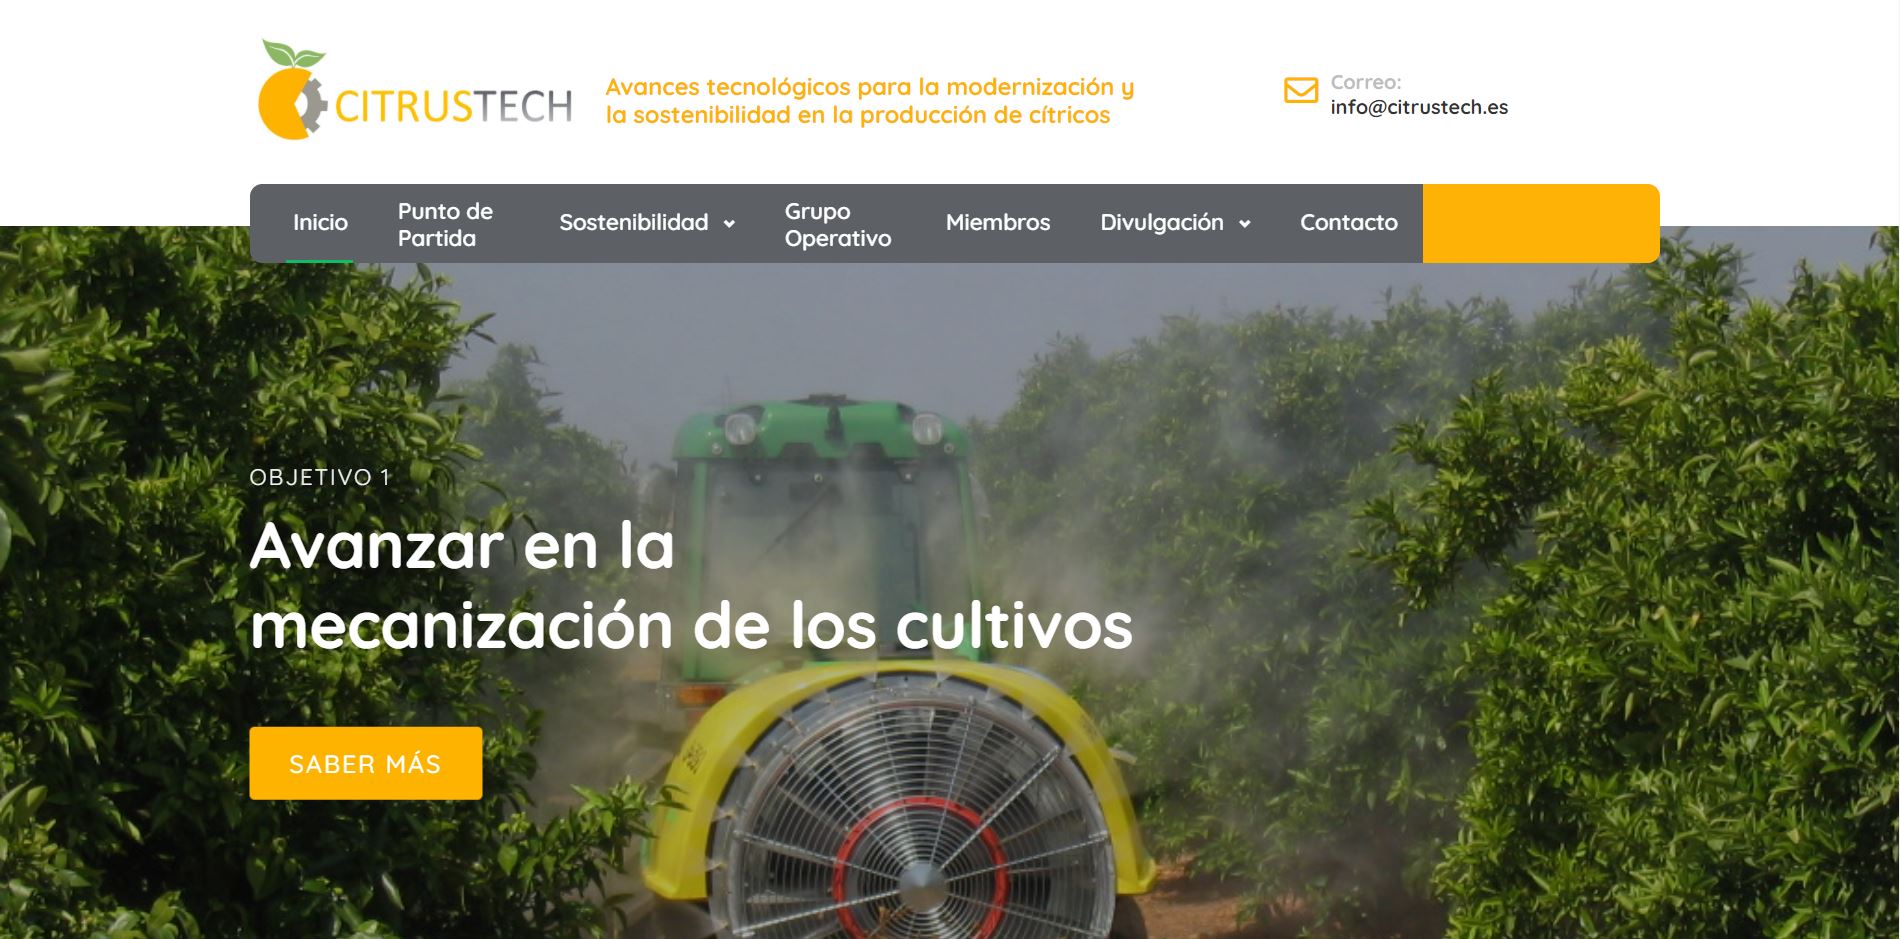 Estrenamos web: Citrustech.es ¡Descubre todas sus novedades!